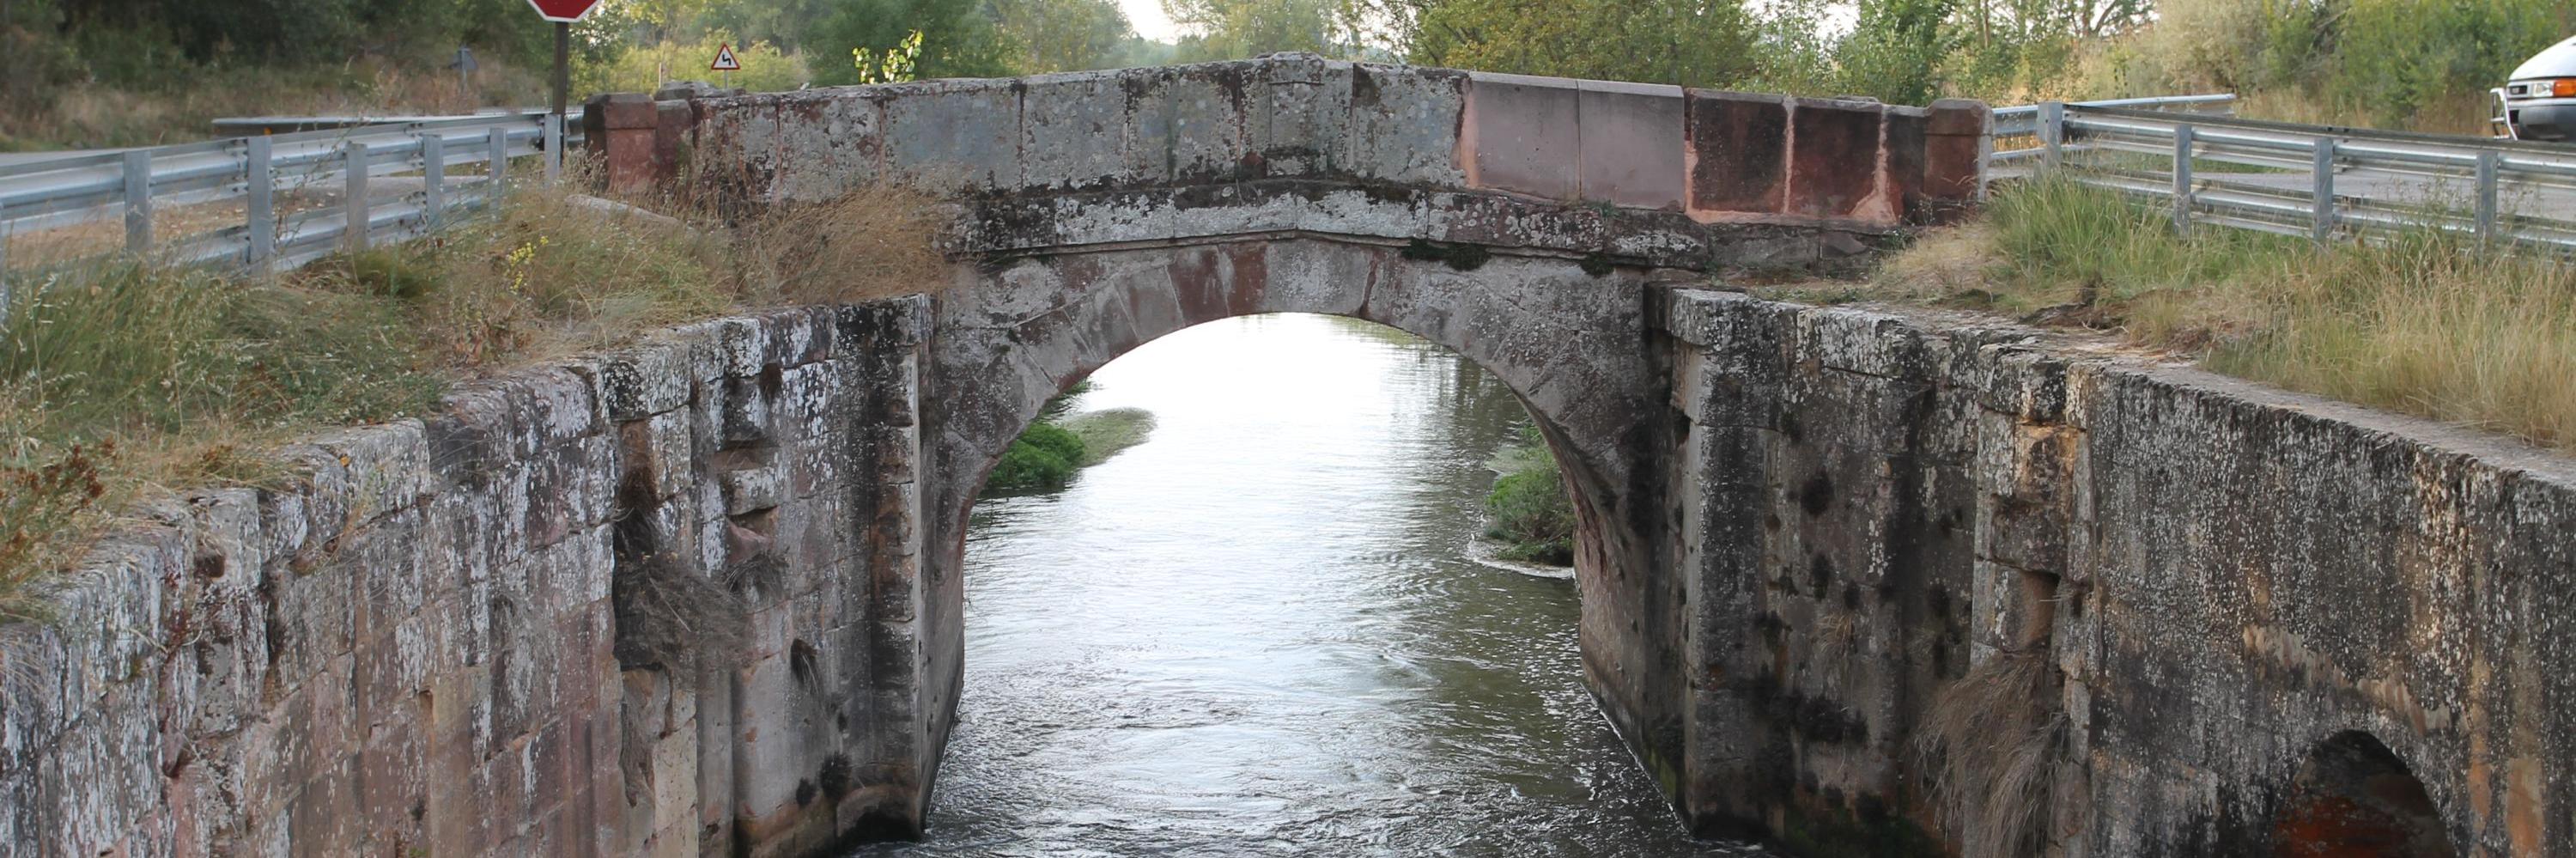 Esclusa 10 Canal de Castilla